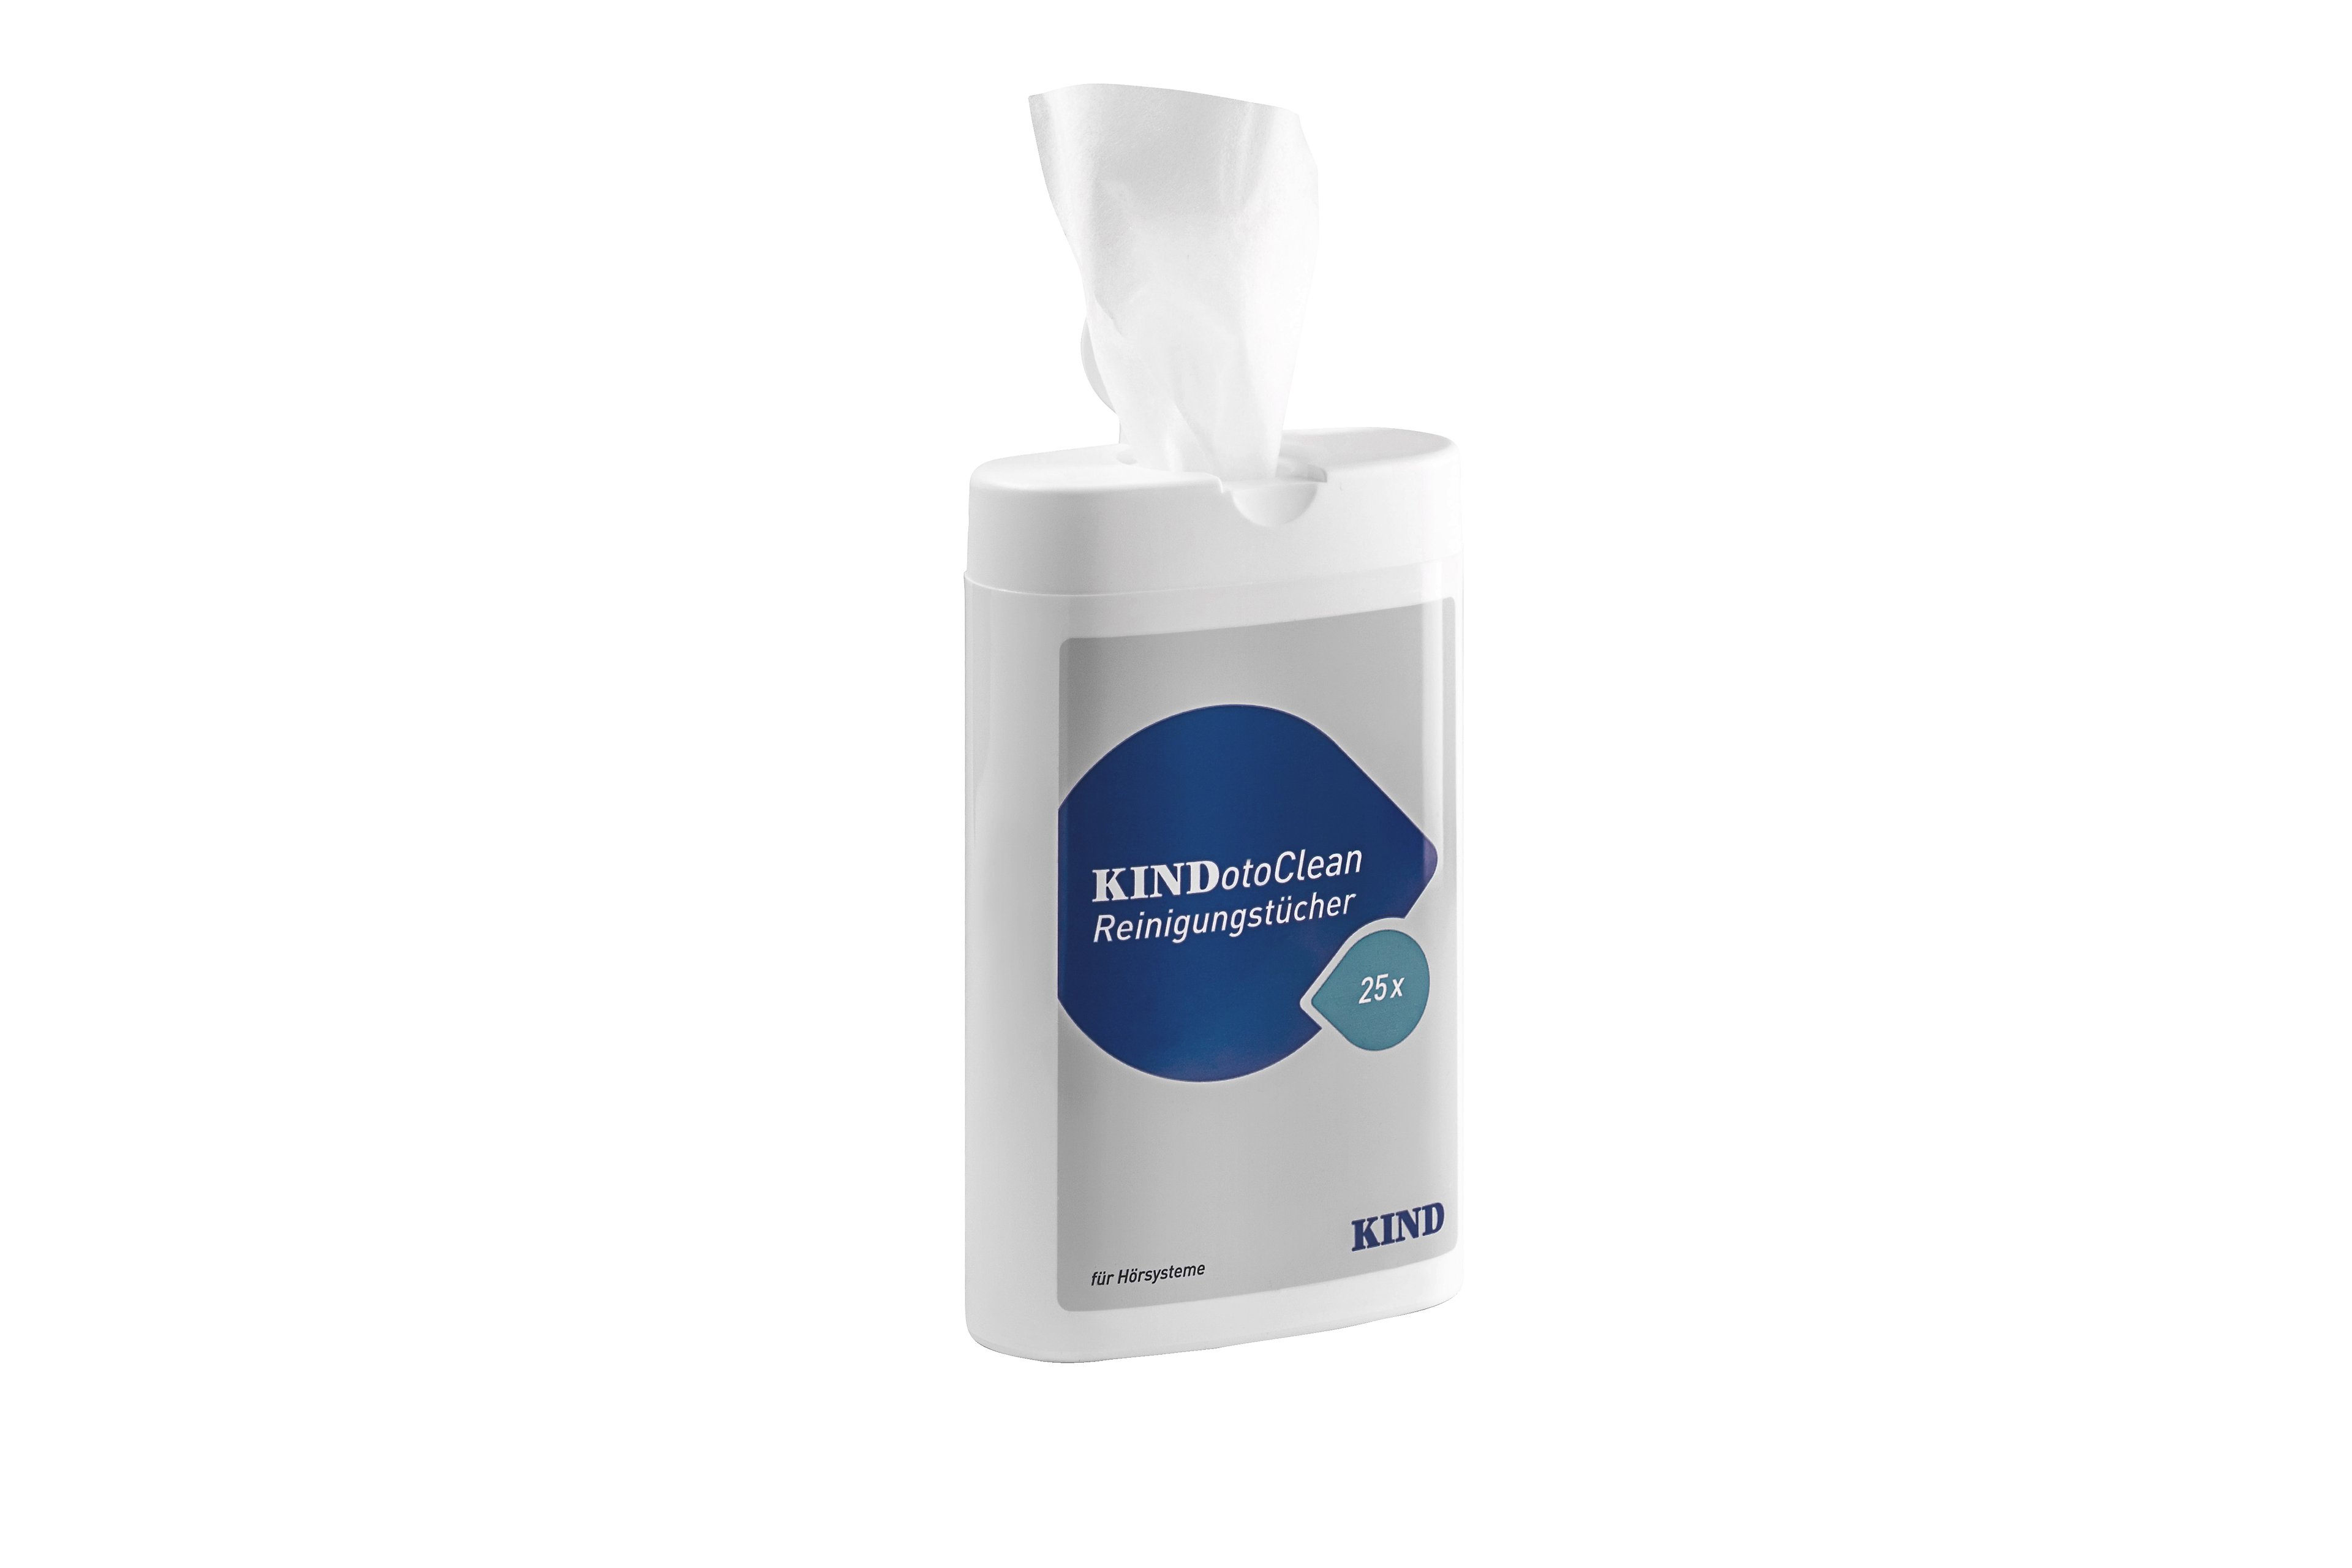 KINDotoClean-Reinigungstuecher-Spendenbox-mit-Tuch